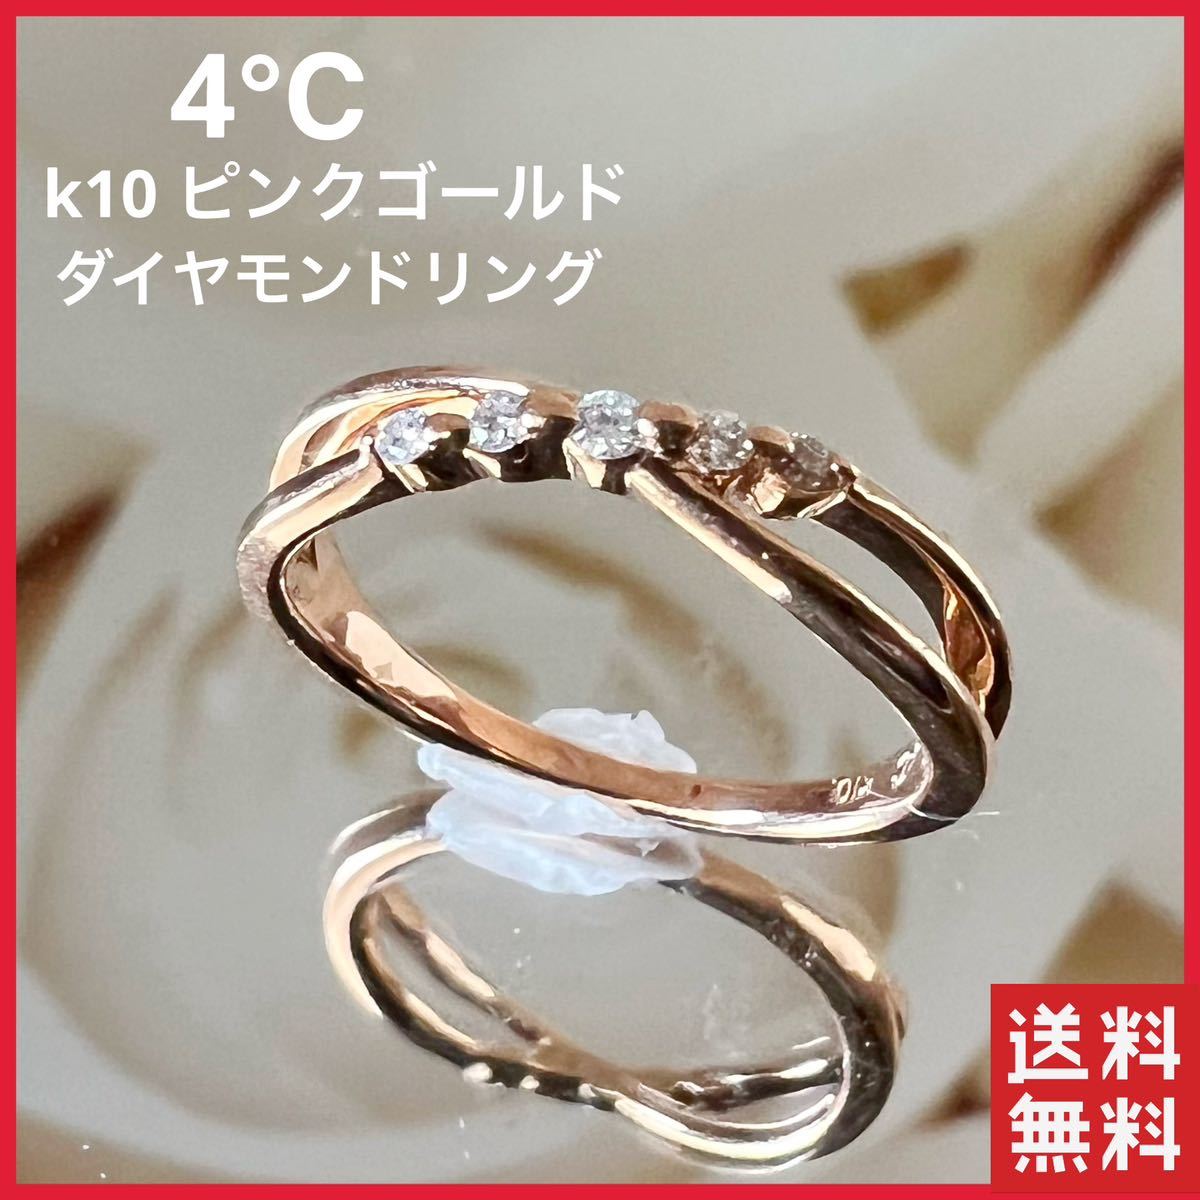 4℃ K10 ピンクゴールド ピンキーリング ダイヤ5粒 ダイヤモンドリング